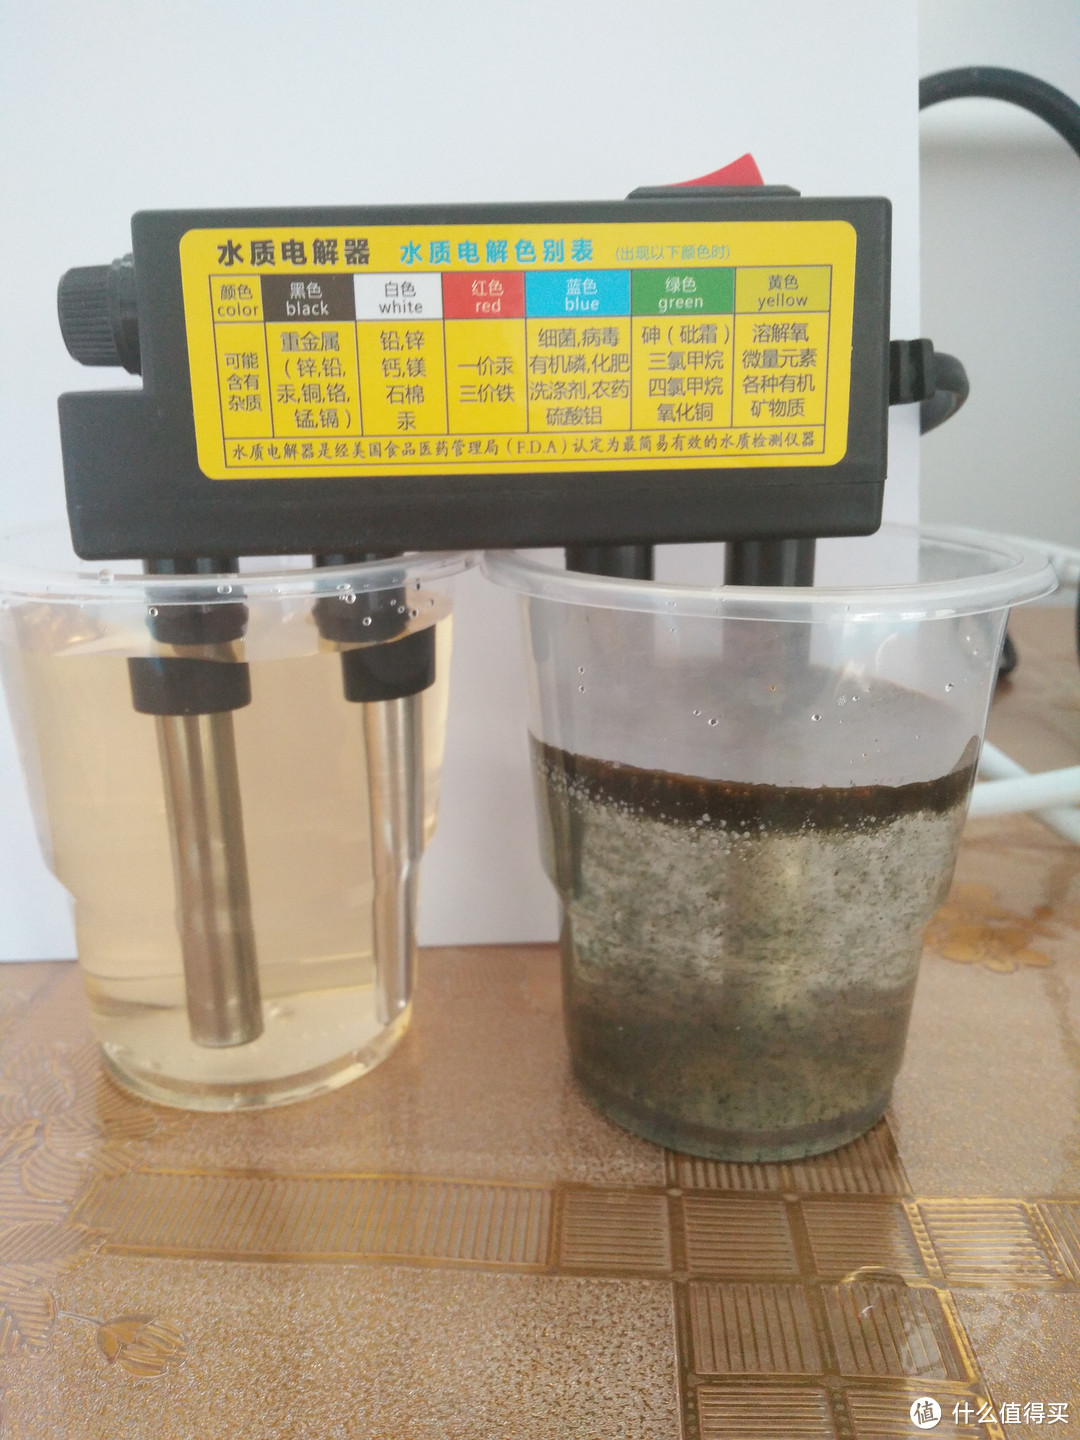 MI 小米 TDS 水质检测笔 & 水质电解器开箱附水质检测小实验